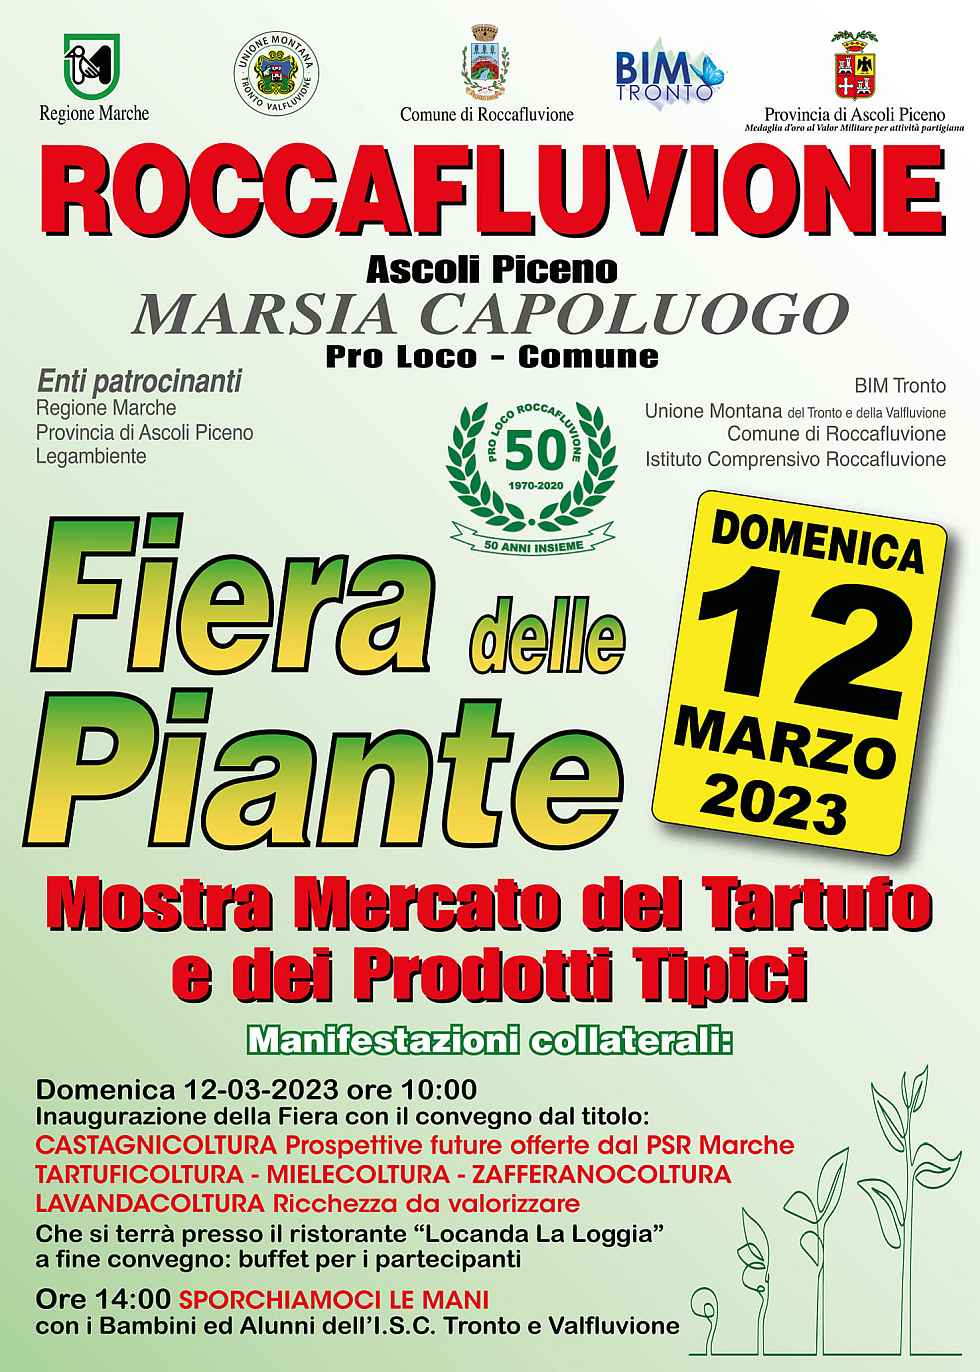 Roccafluvione (AP)
"Fiera delle Piante" 
12 Marzo 2023